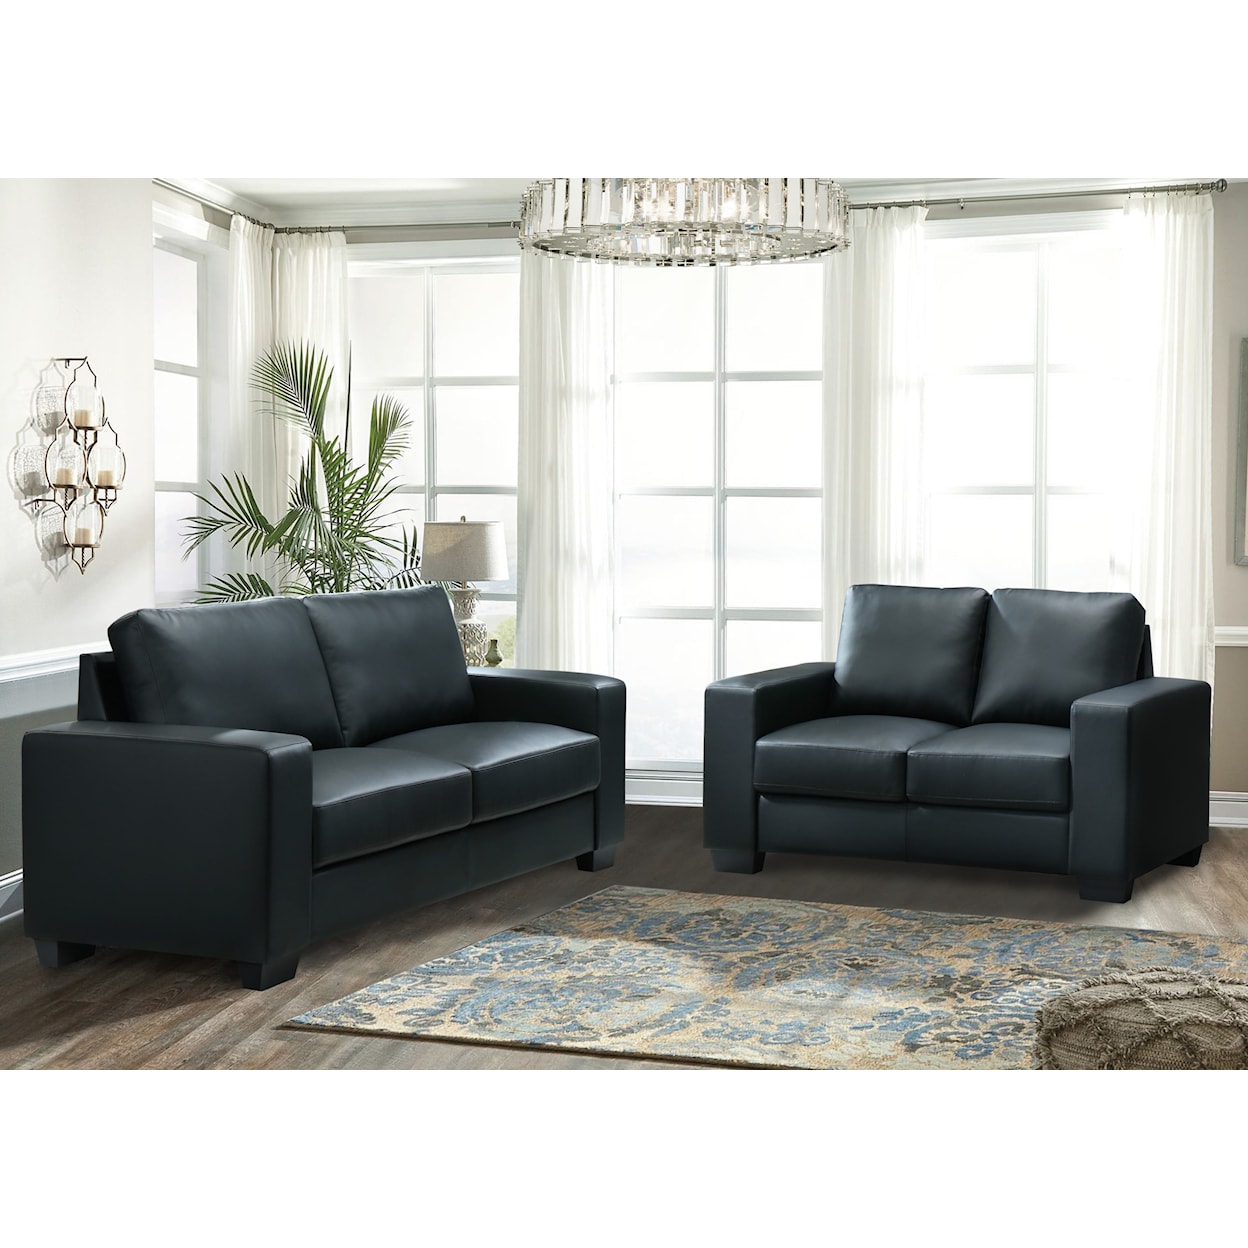 Global Furniture U801 Sofa Black Pvc